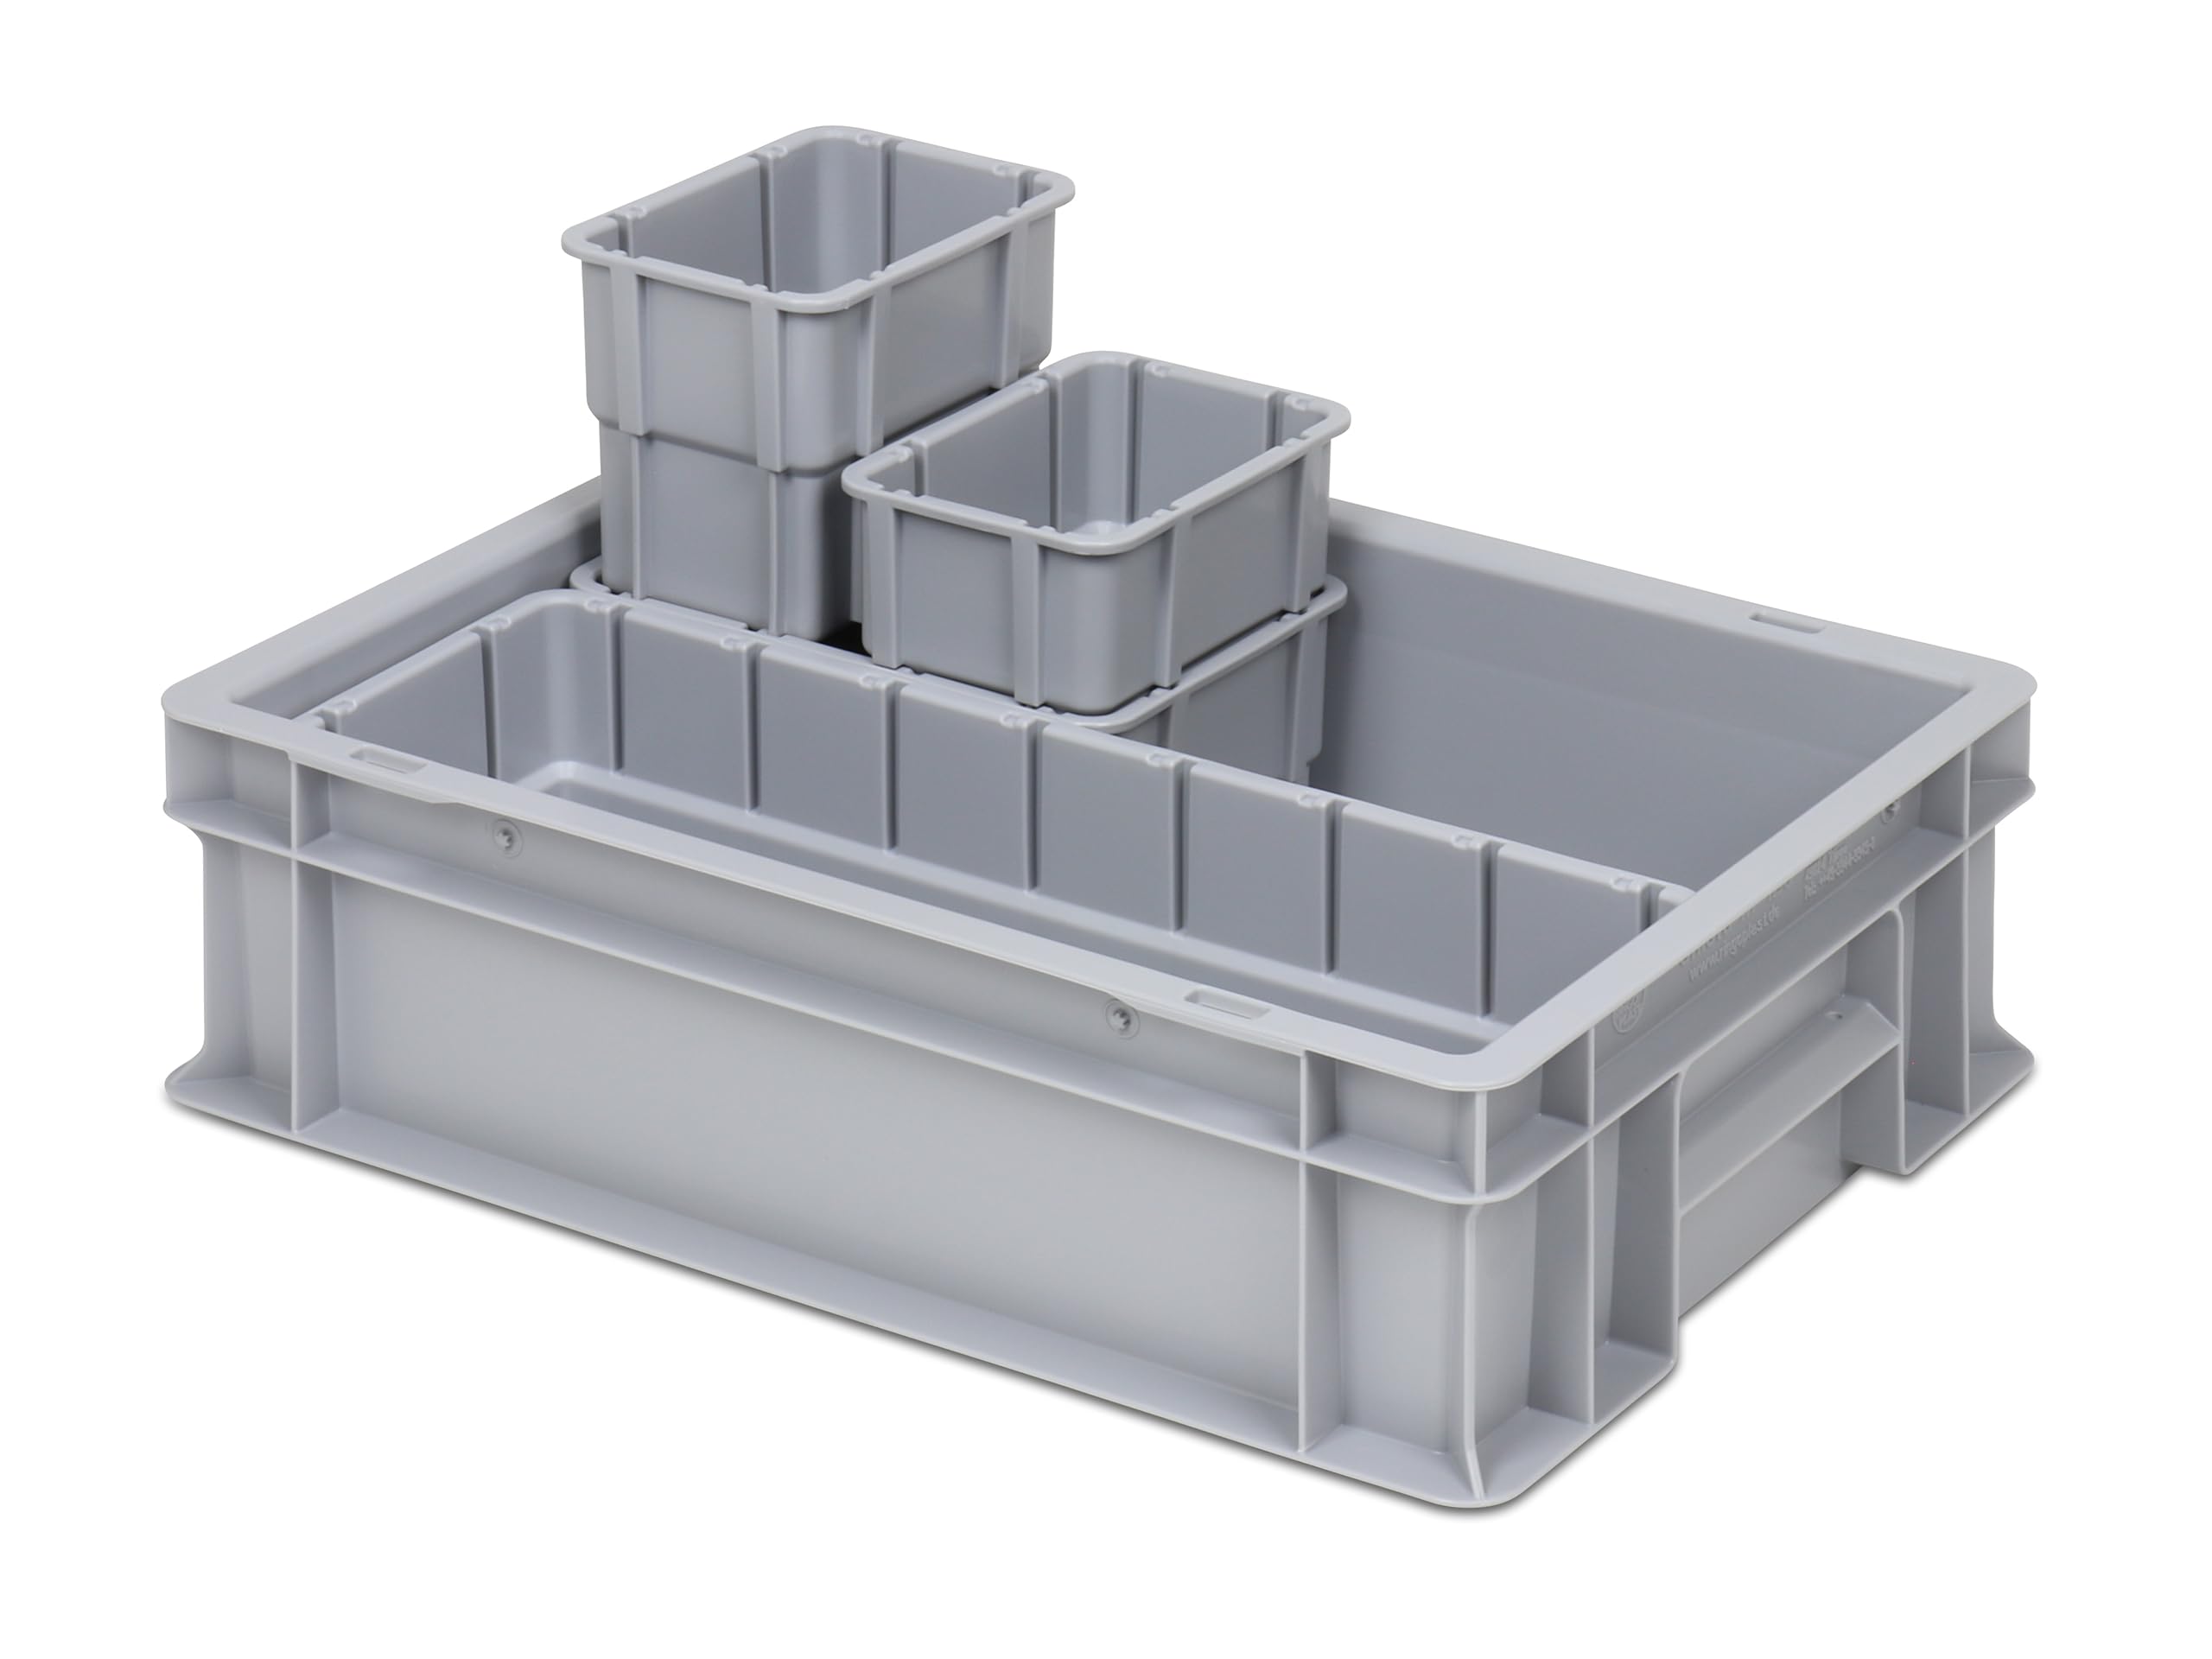 Einsatzkasten Einteilungs-Set für Eurobehälter, Schubladen mit Innenmaß 362x262 mm (LxB), 102 mm hoch, verschiedene Größen/Farben (4er Mix Set inkl. Box, grau)